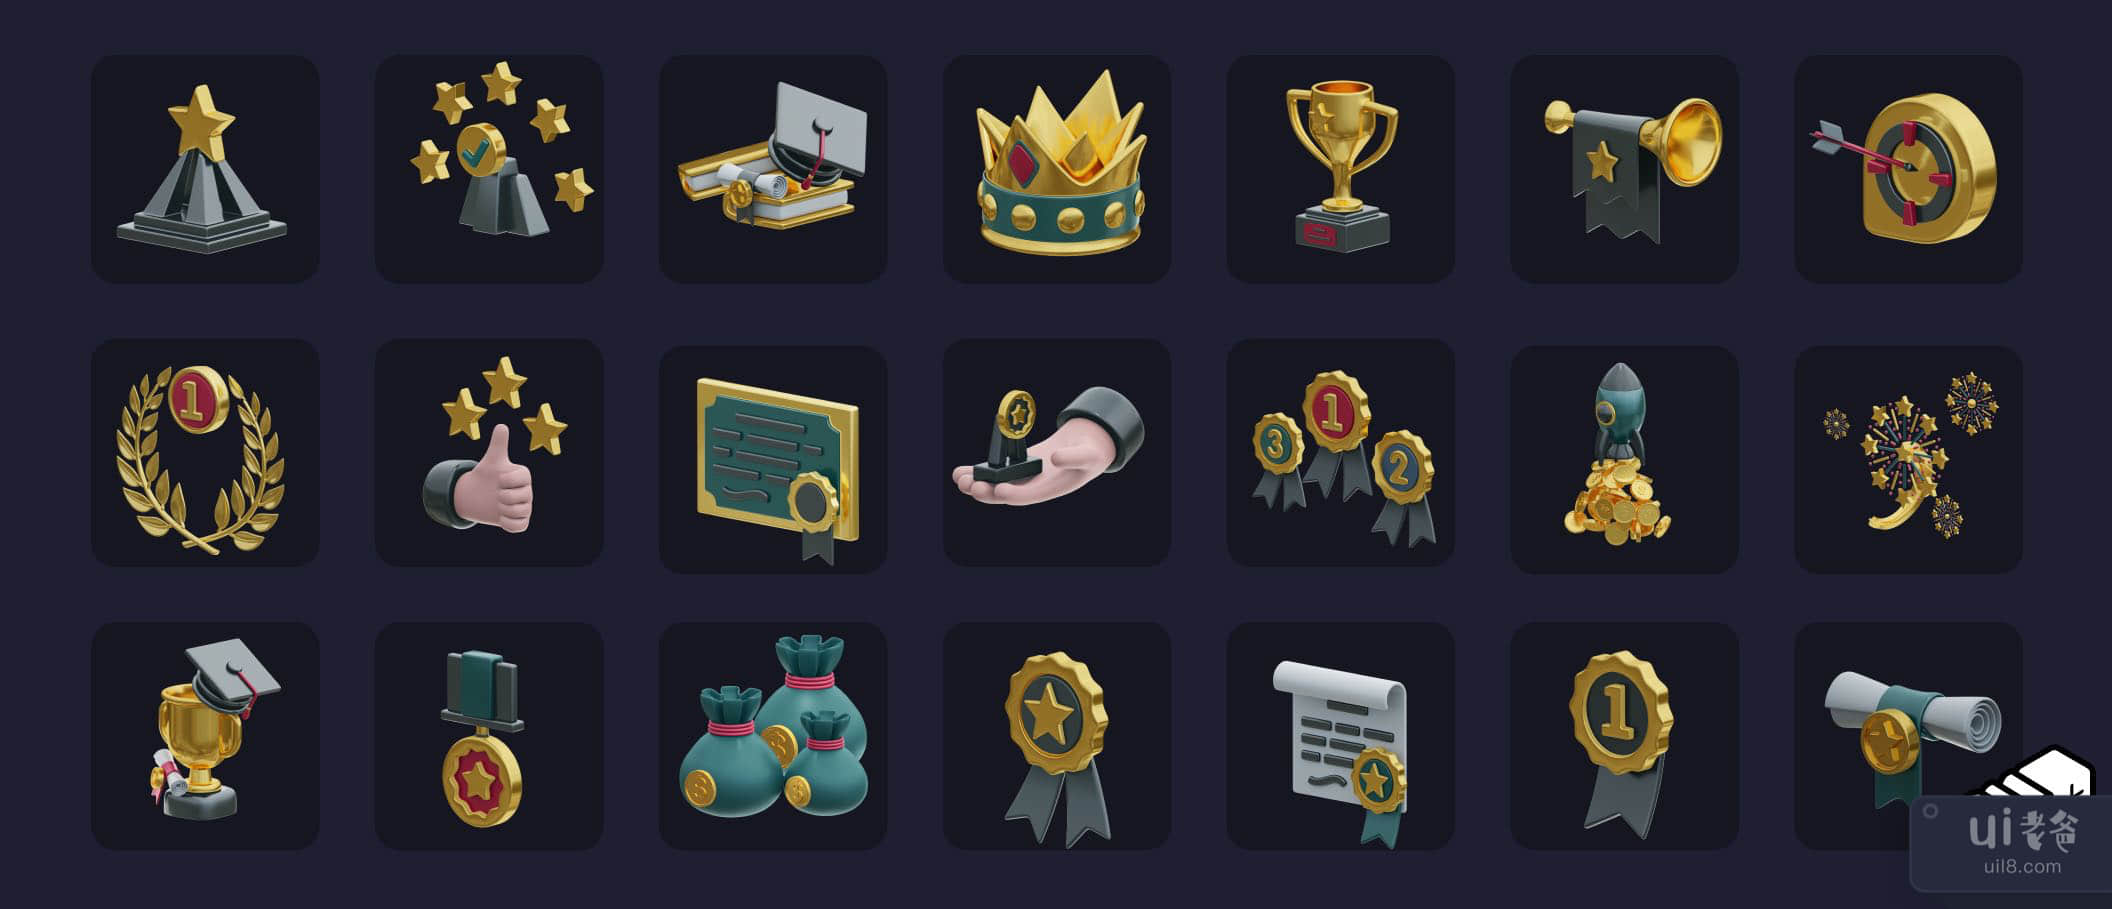 奖励与成功图标 (Reward & Success Icons)插图